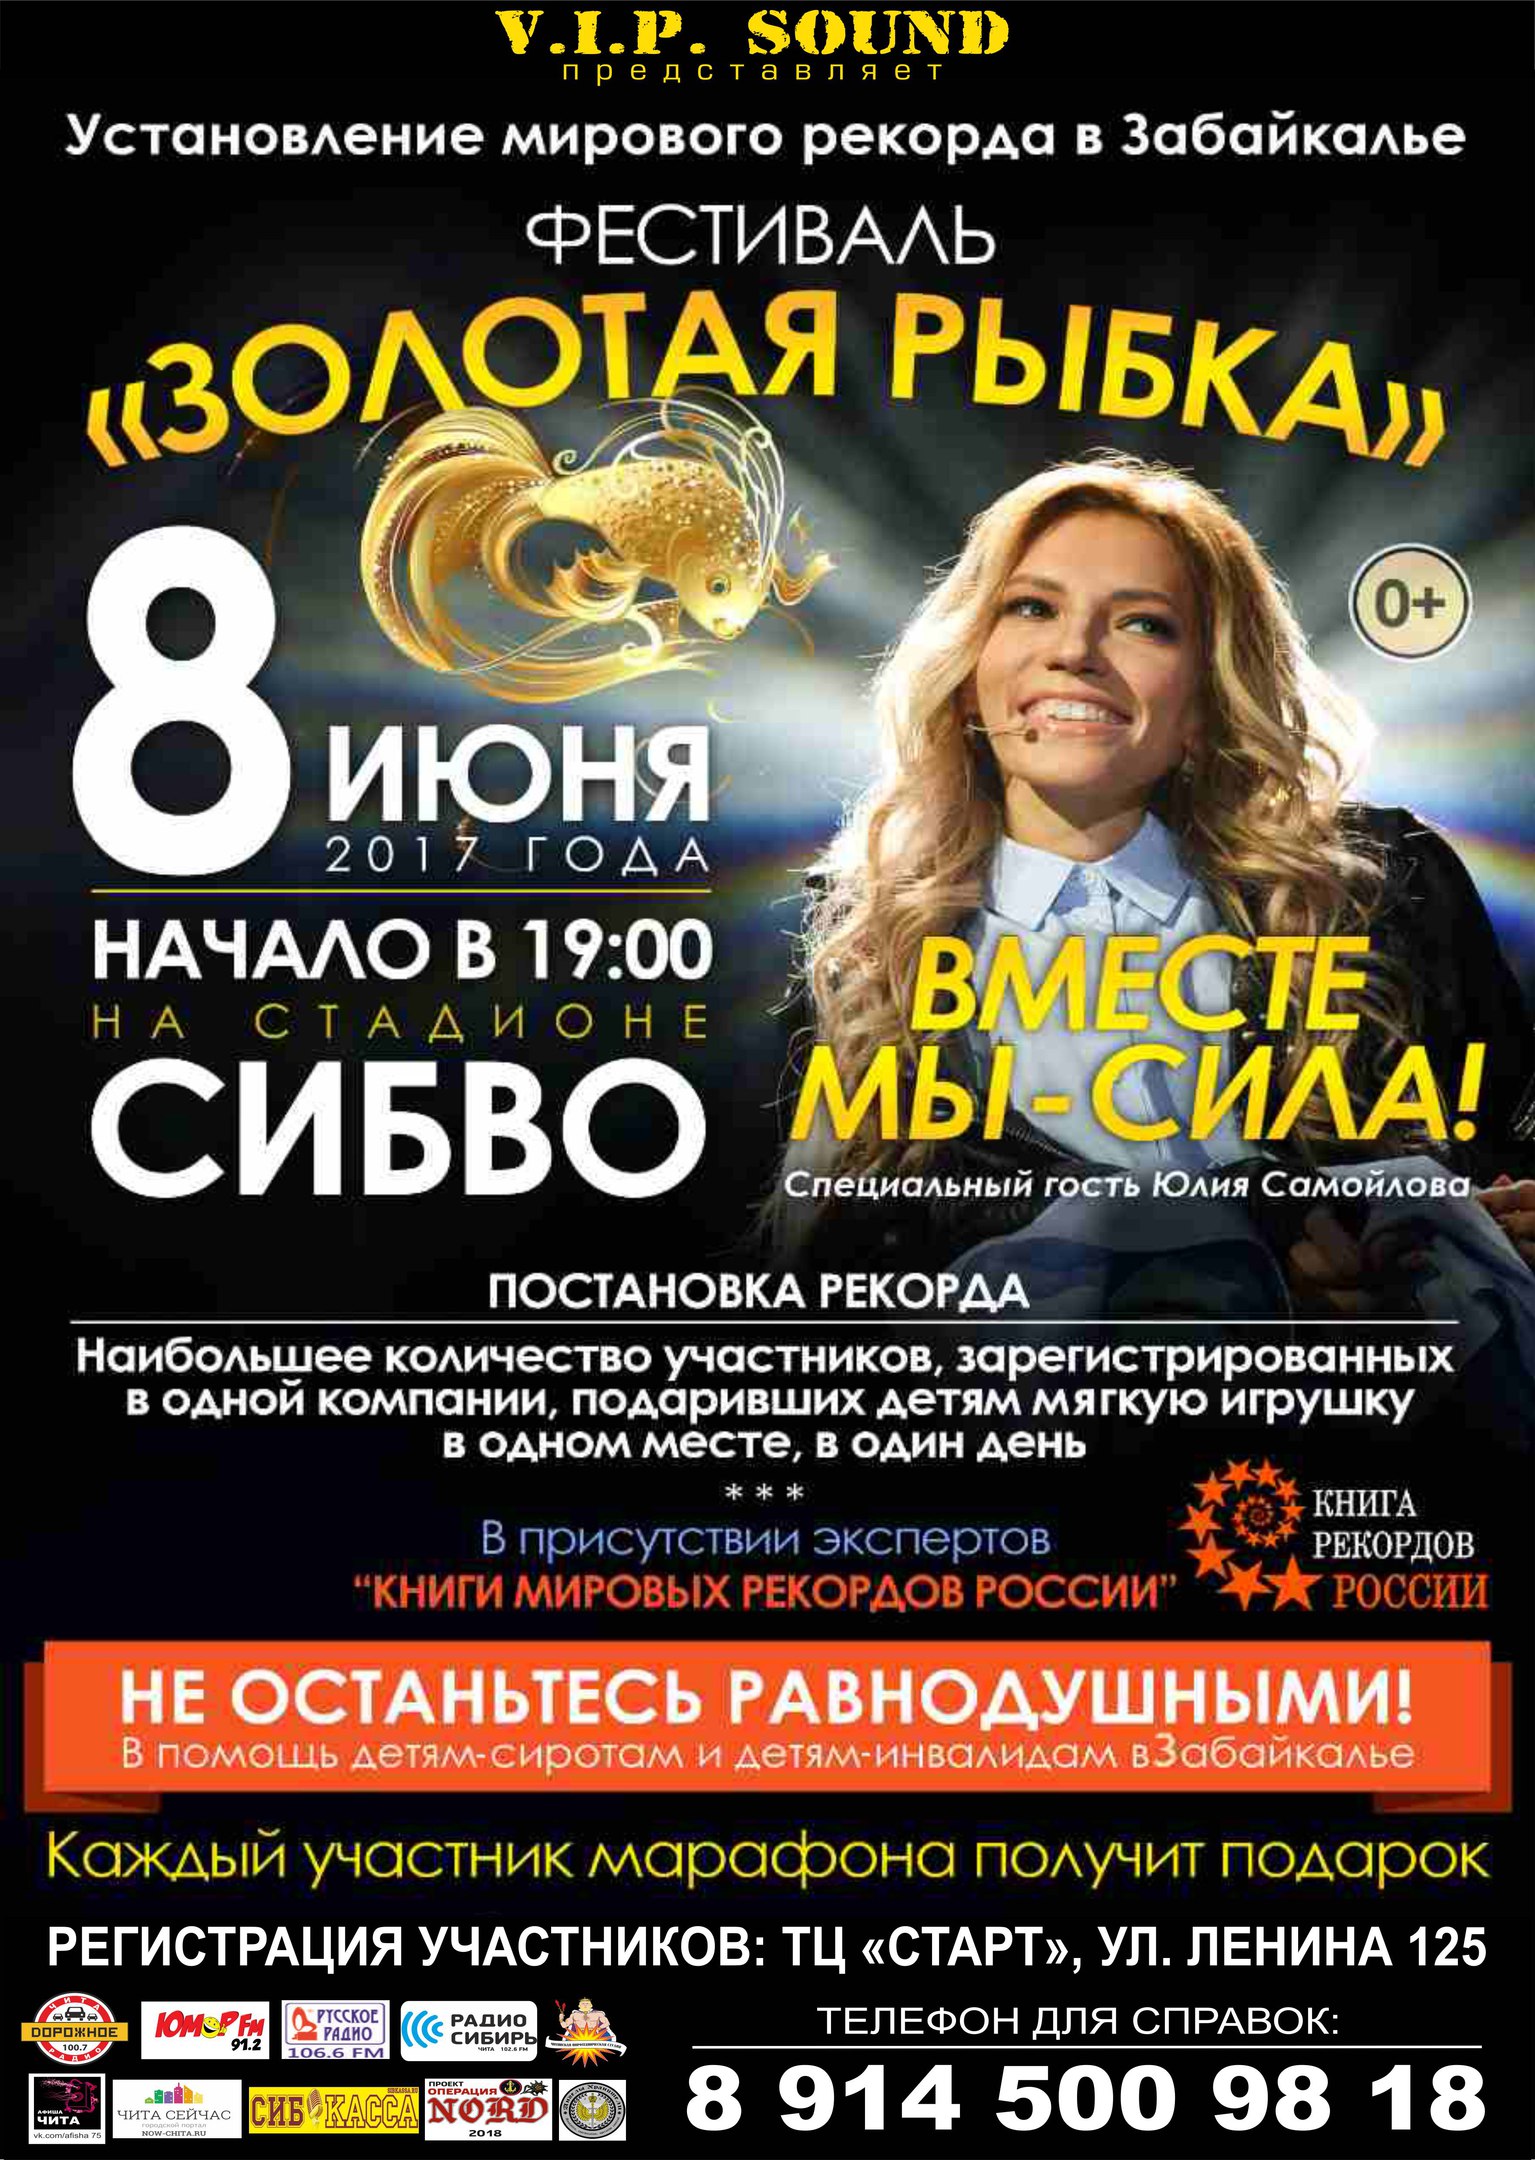 Мировой рекорд установят на концерте Юлии Самойловой в Чите